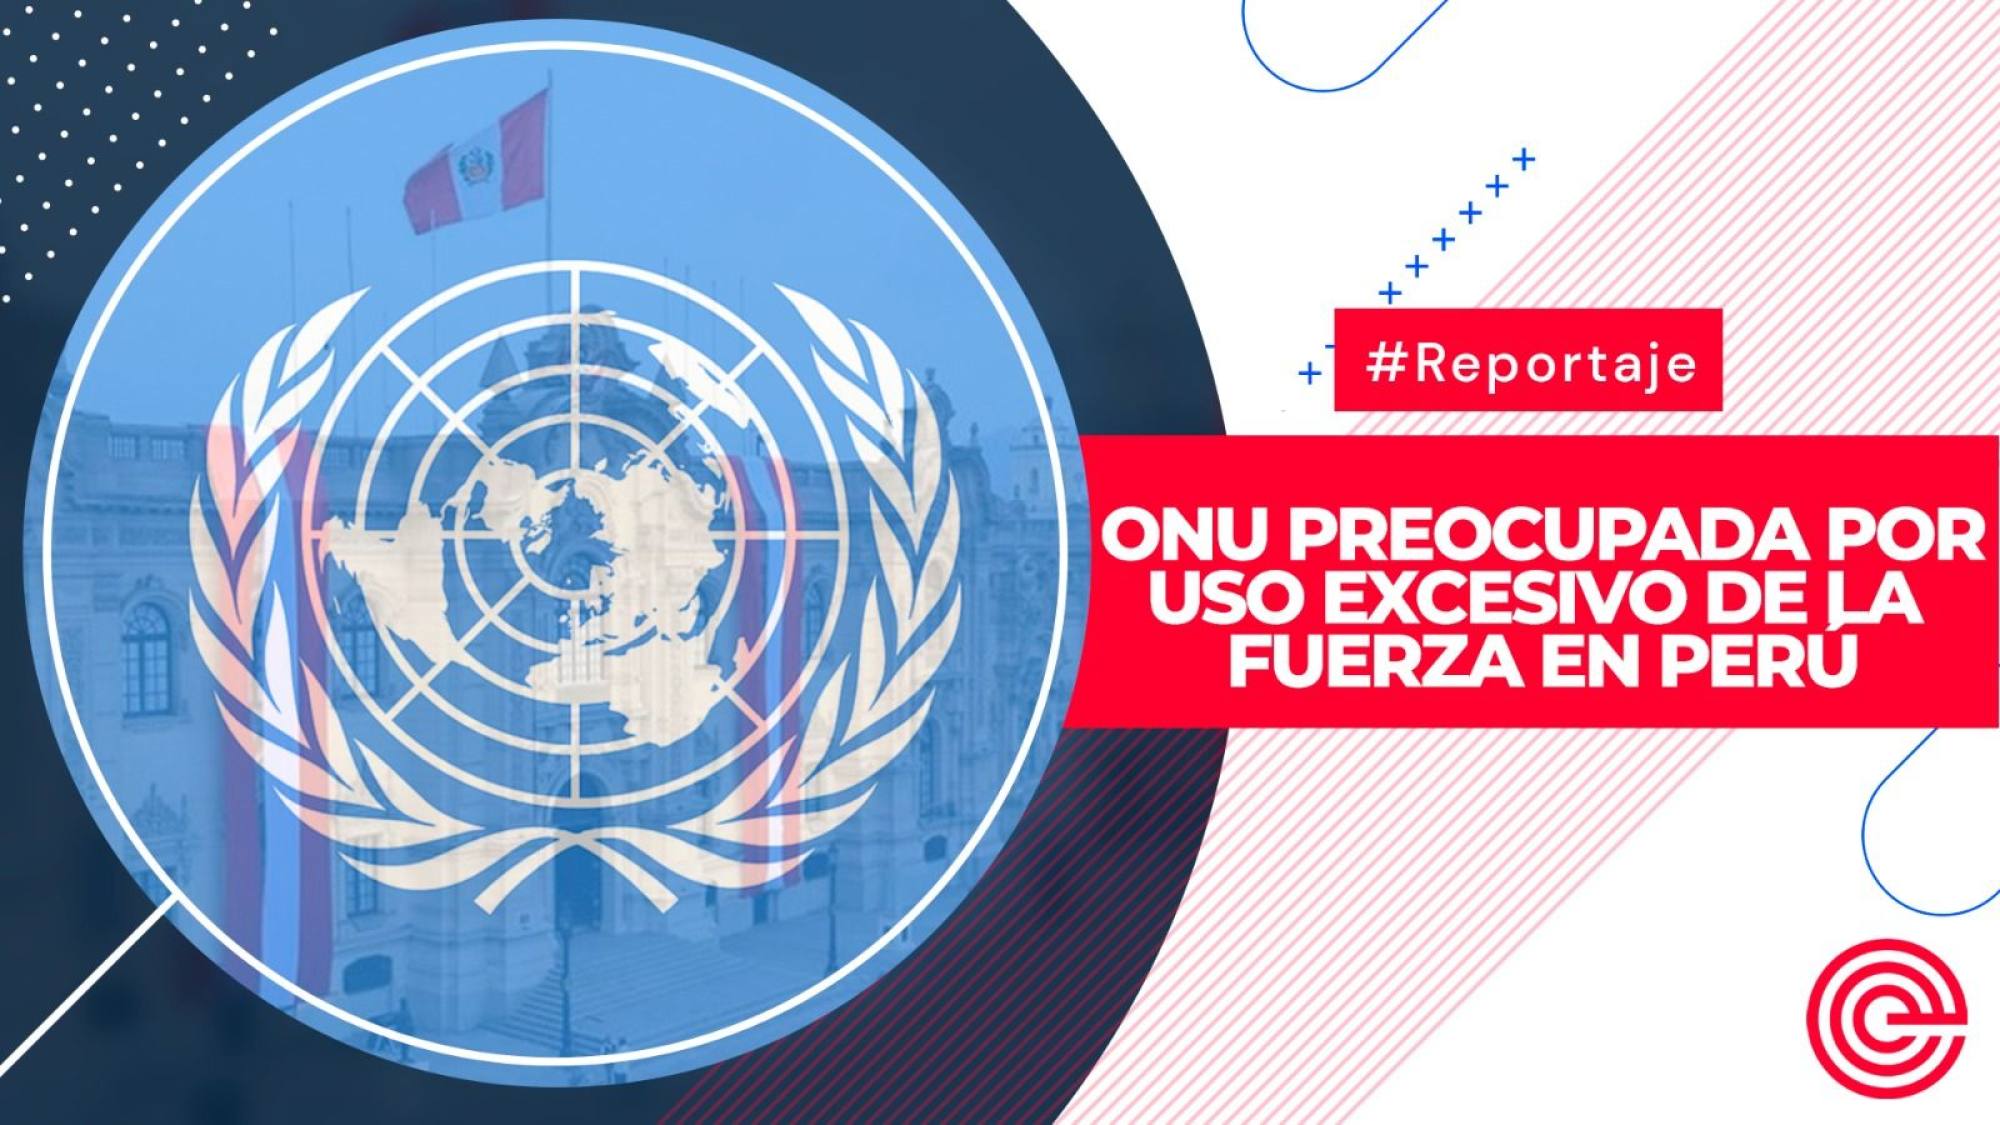 ONU preocupada por uso excesivo de la fuerza en Perú, Epicentro TV